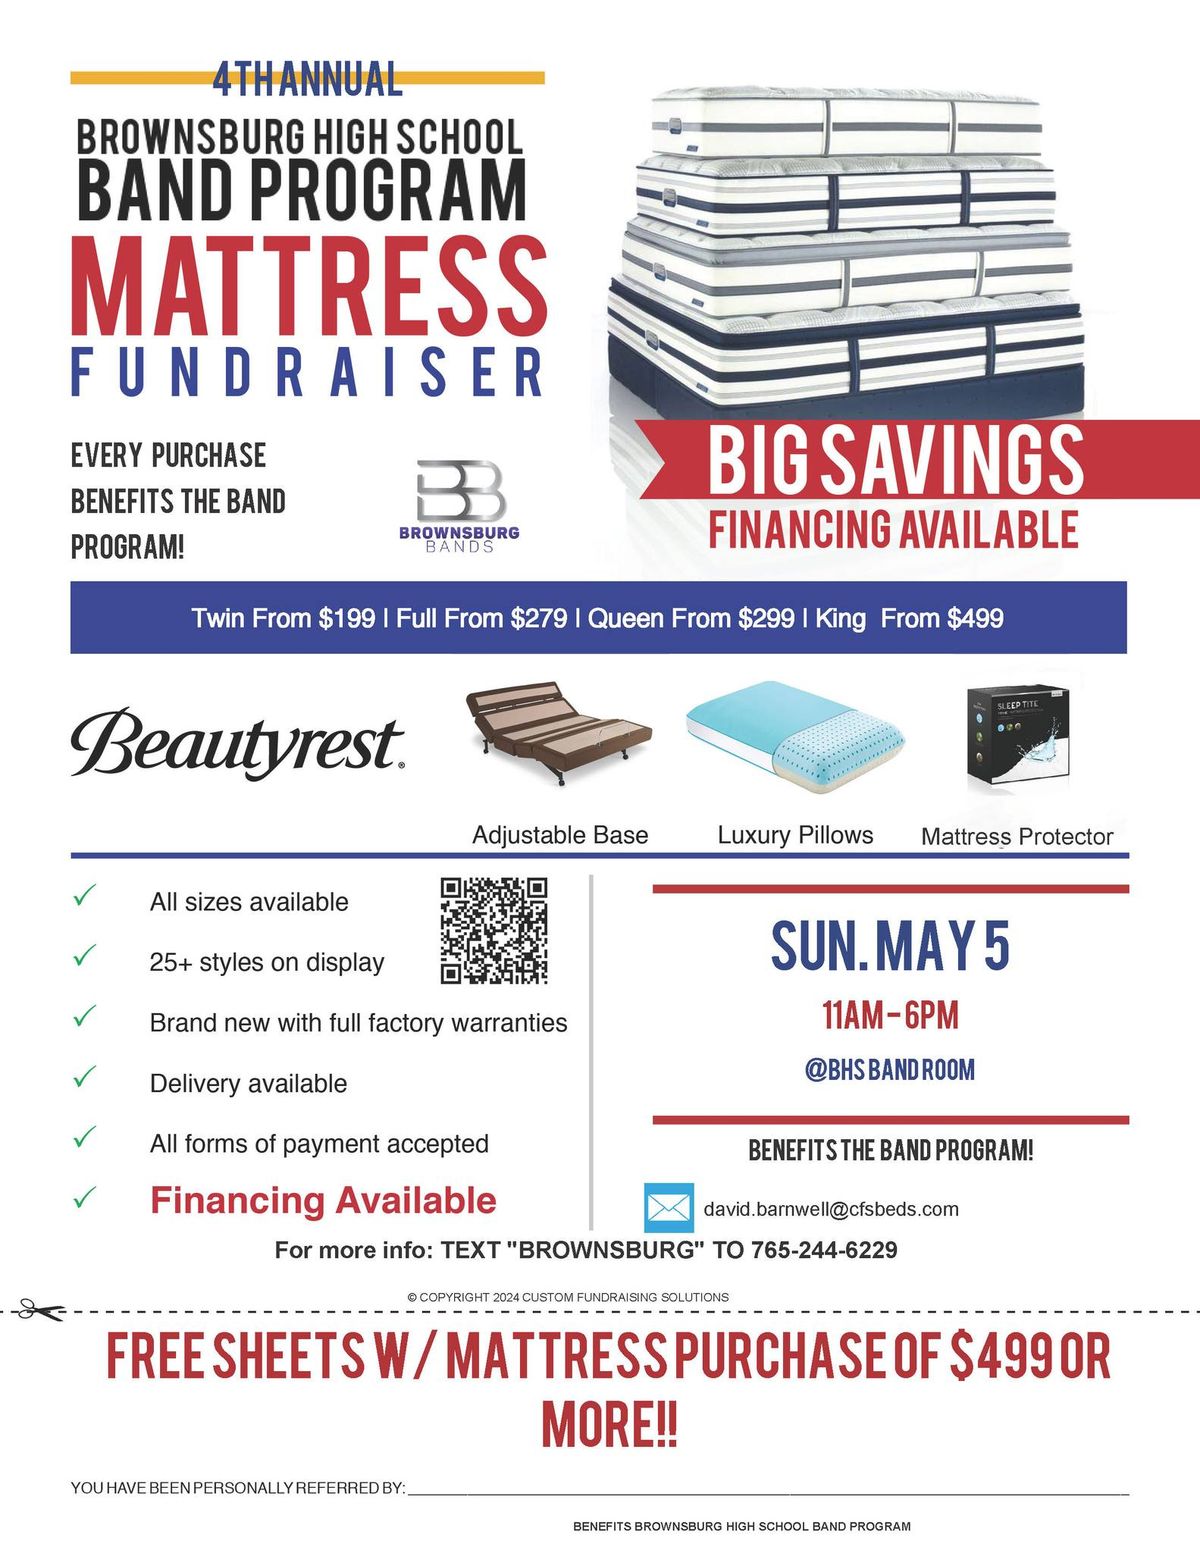 Brownsburg Bands Mattress Sale Fundraiser